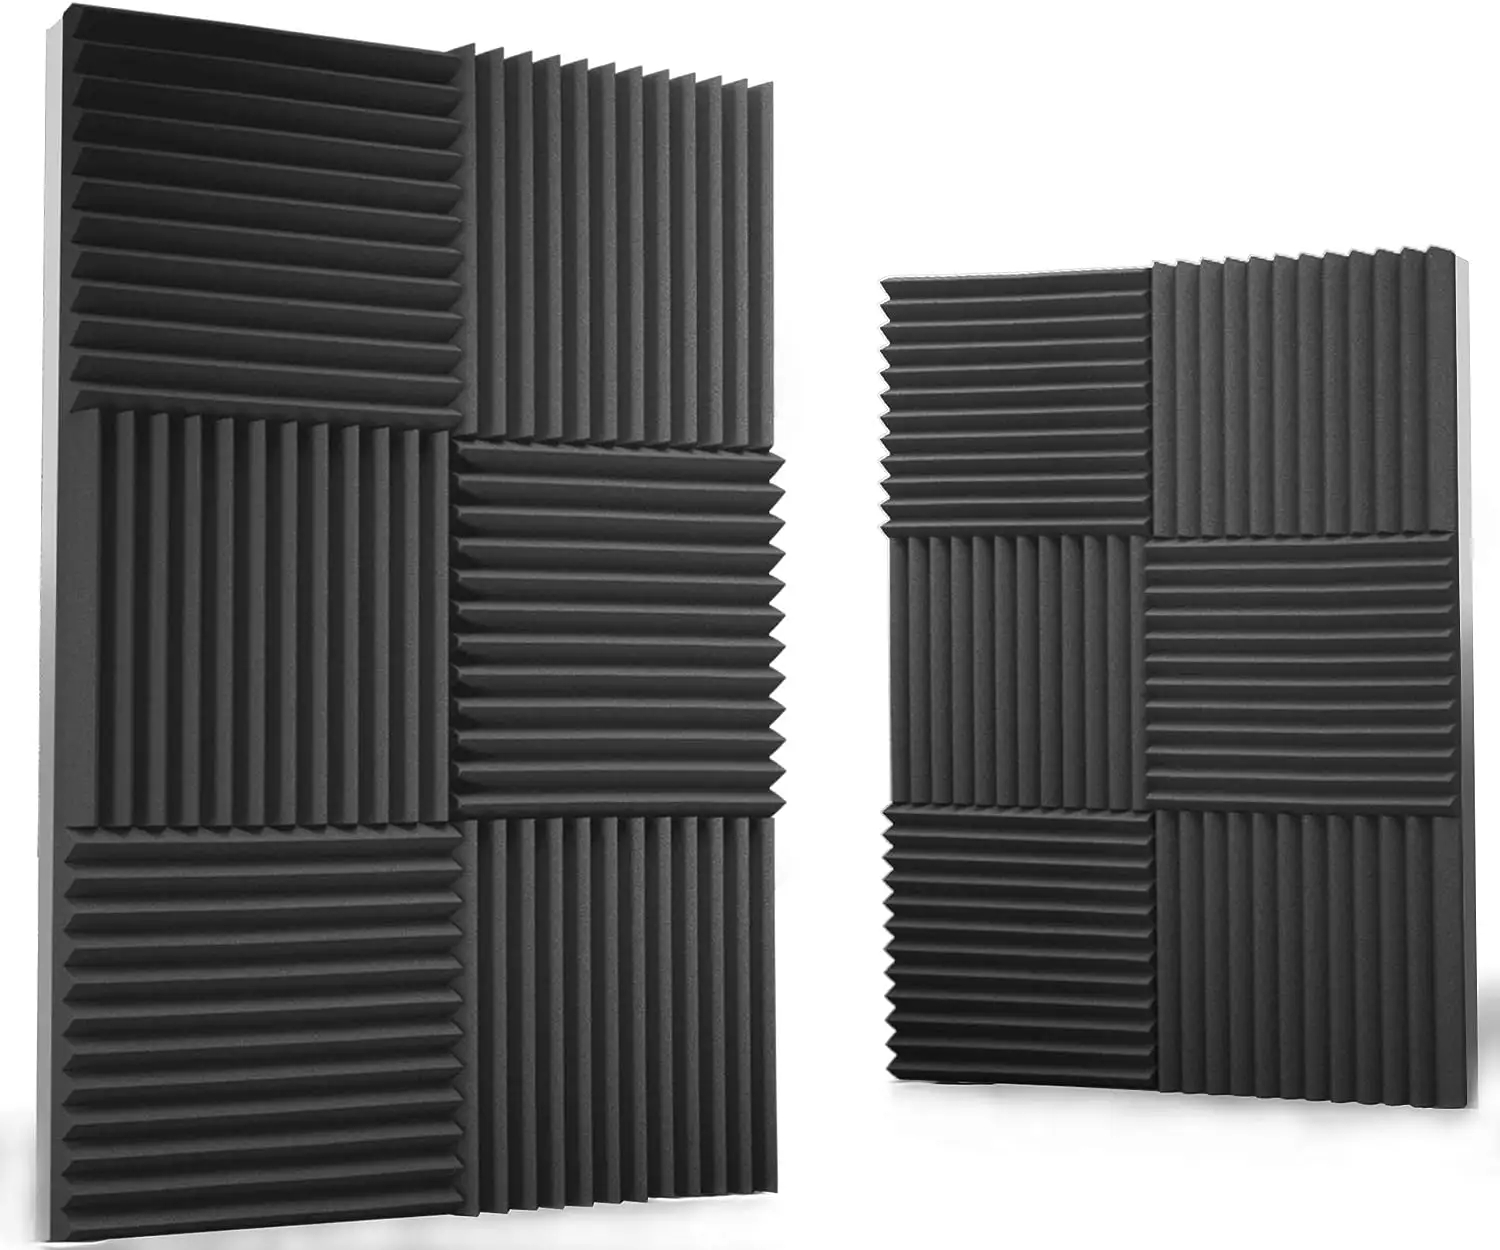 25er Pack Schall dämm platte 50x50x2,5 cm Studio Foam Akustik schaum